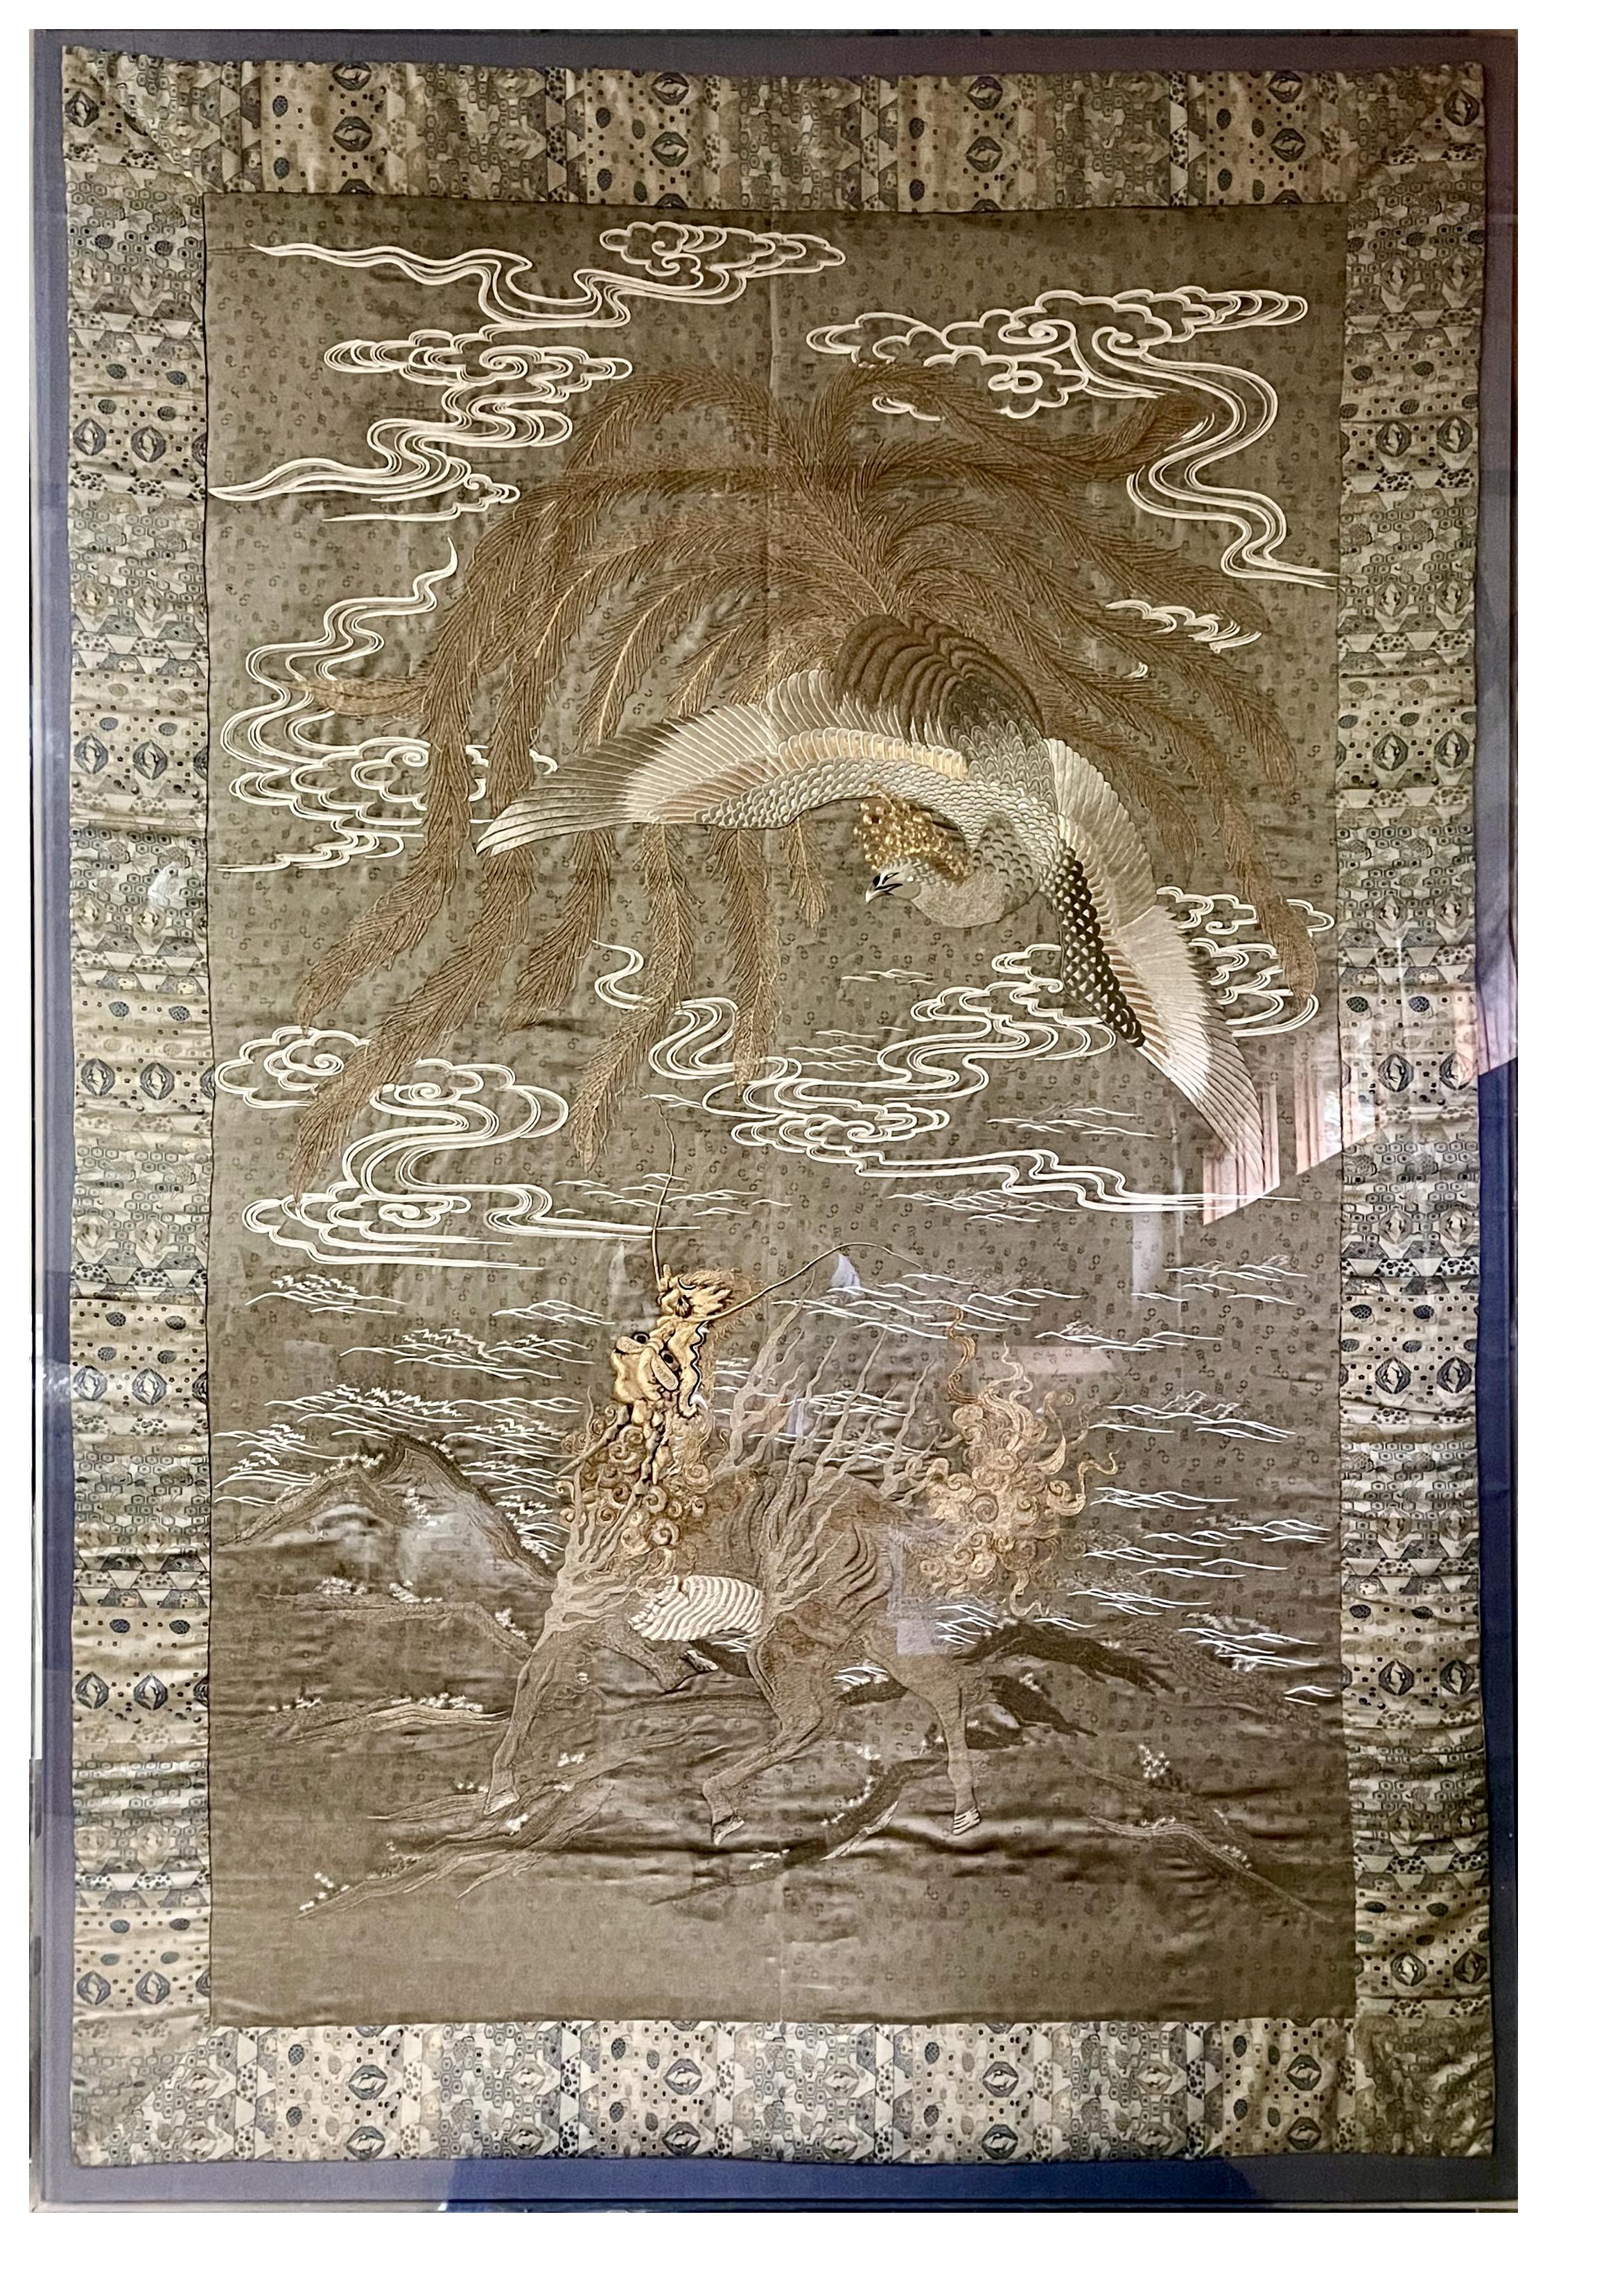 Ein massiver japanischer Wandteppich mit Ornamenten wird professionell in einer maßgefertigten Acryl-Schattenbox präsentiert. Das feine Textilkunstwerk wird auf die 1890-1920er Jahre, die späte Meiji- (1868-1912) oder möglicherweise die Taisho-Zeit